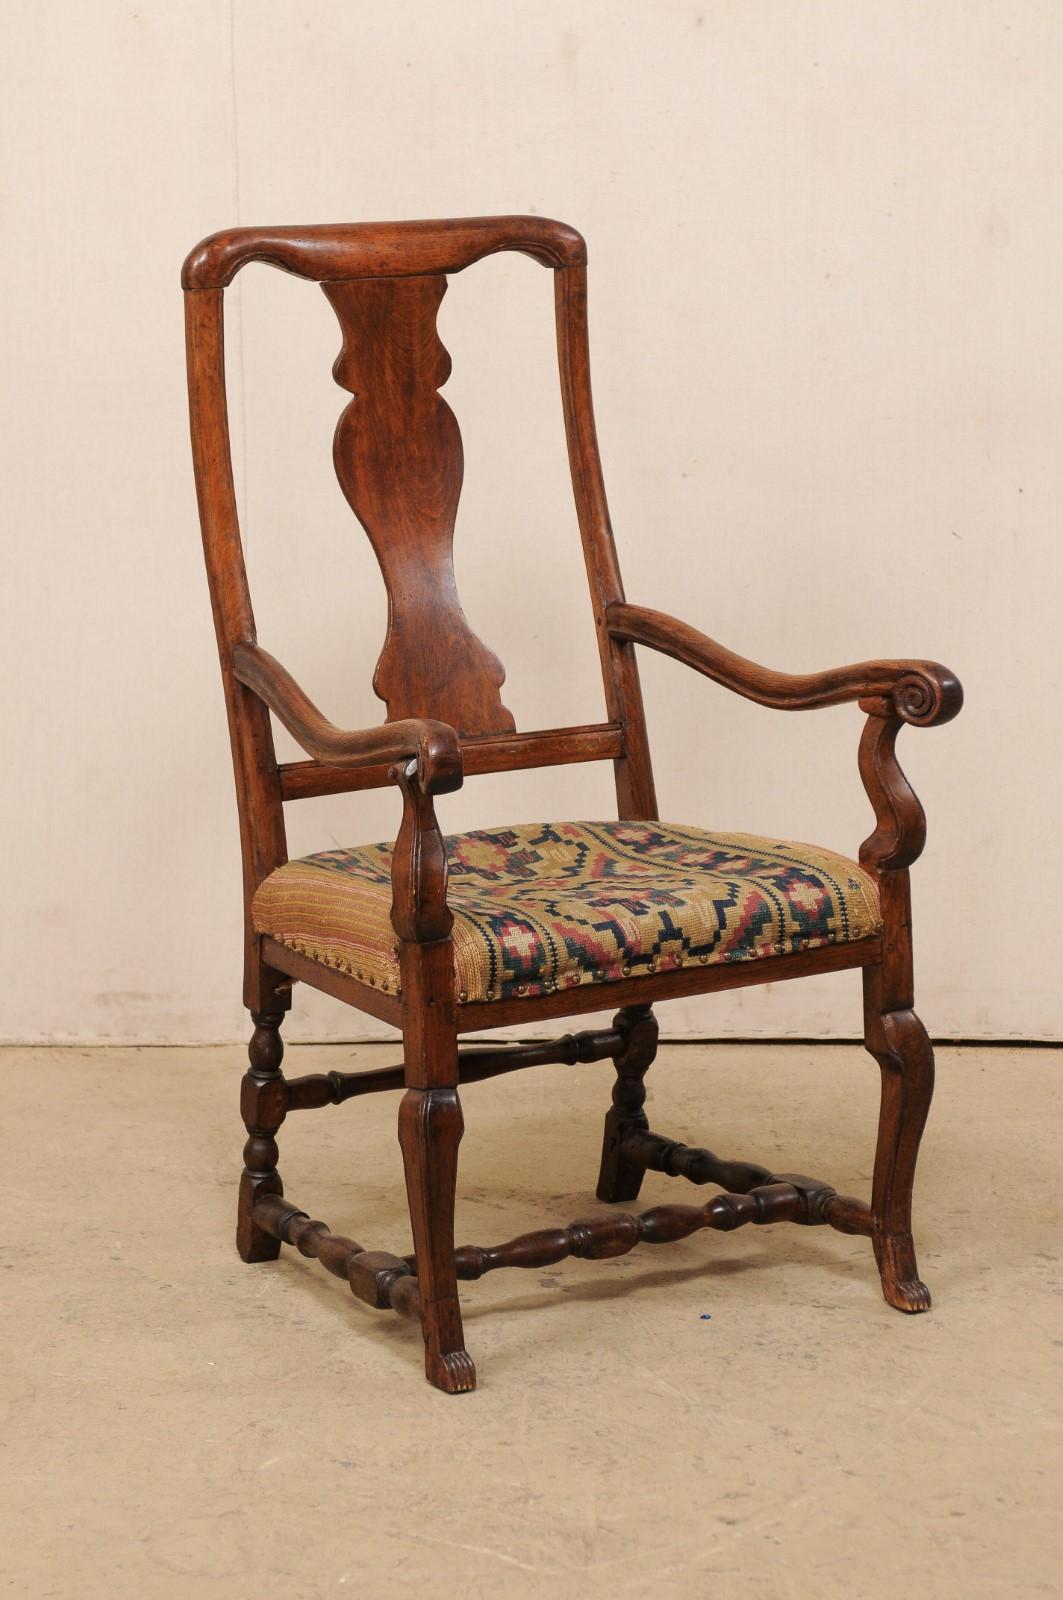 Ein schwedischer, geschnitzter Holzsessel mit fabelhaftem, gewebtem Stoffbezug aus der Mitte des 18. Dieser antike Stuhl aus Schweden stammt zwar aus der Rokokozeit, ist aber in seinen Schnitzereien eher zurückhaltend und eher vom Land als aus der